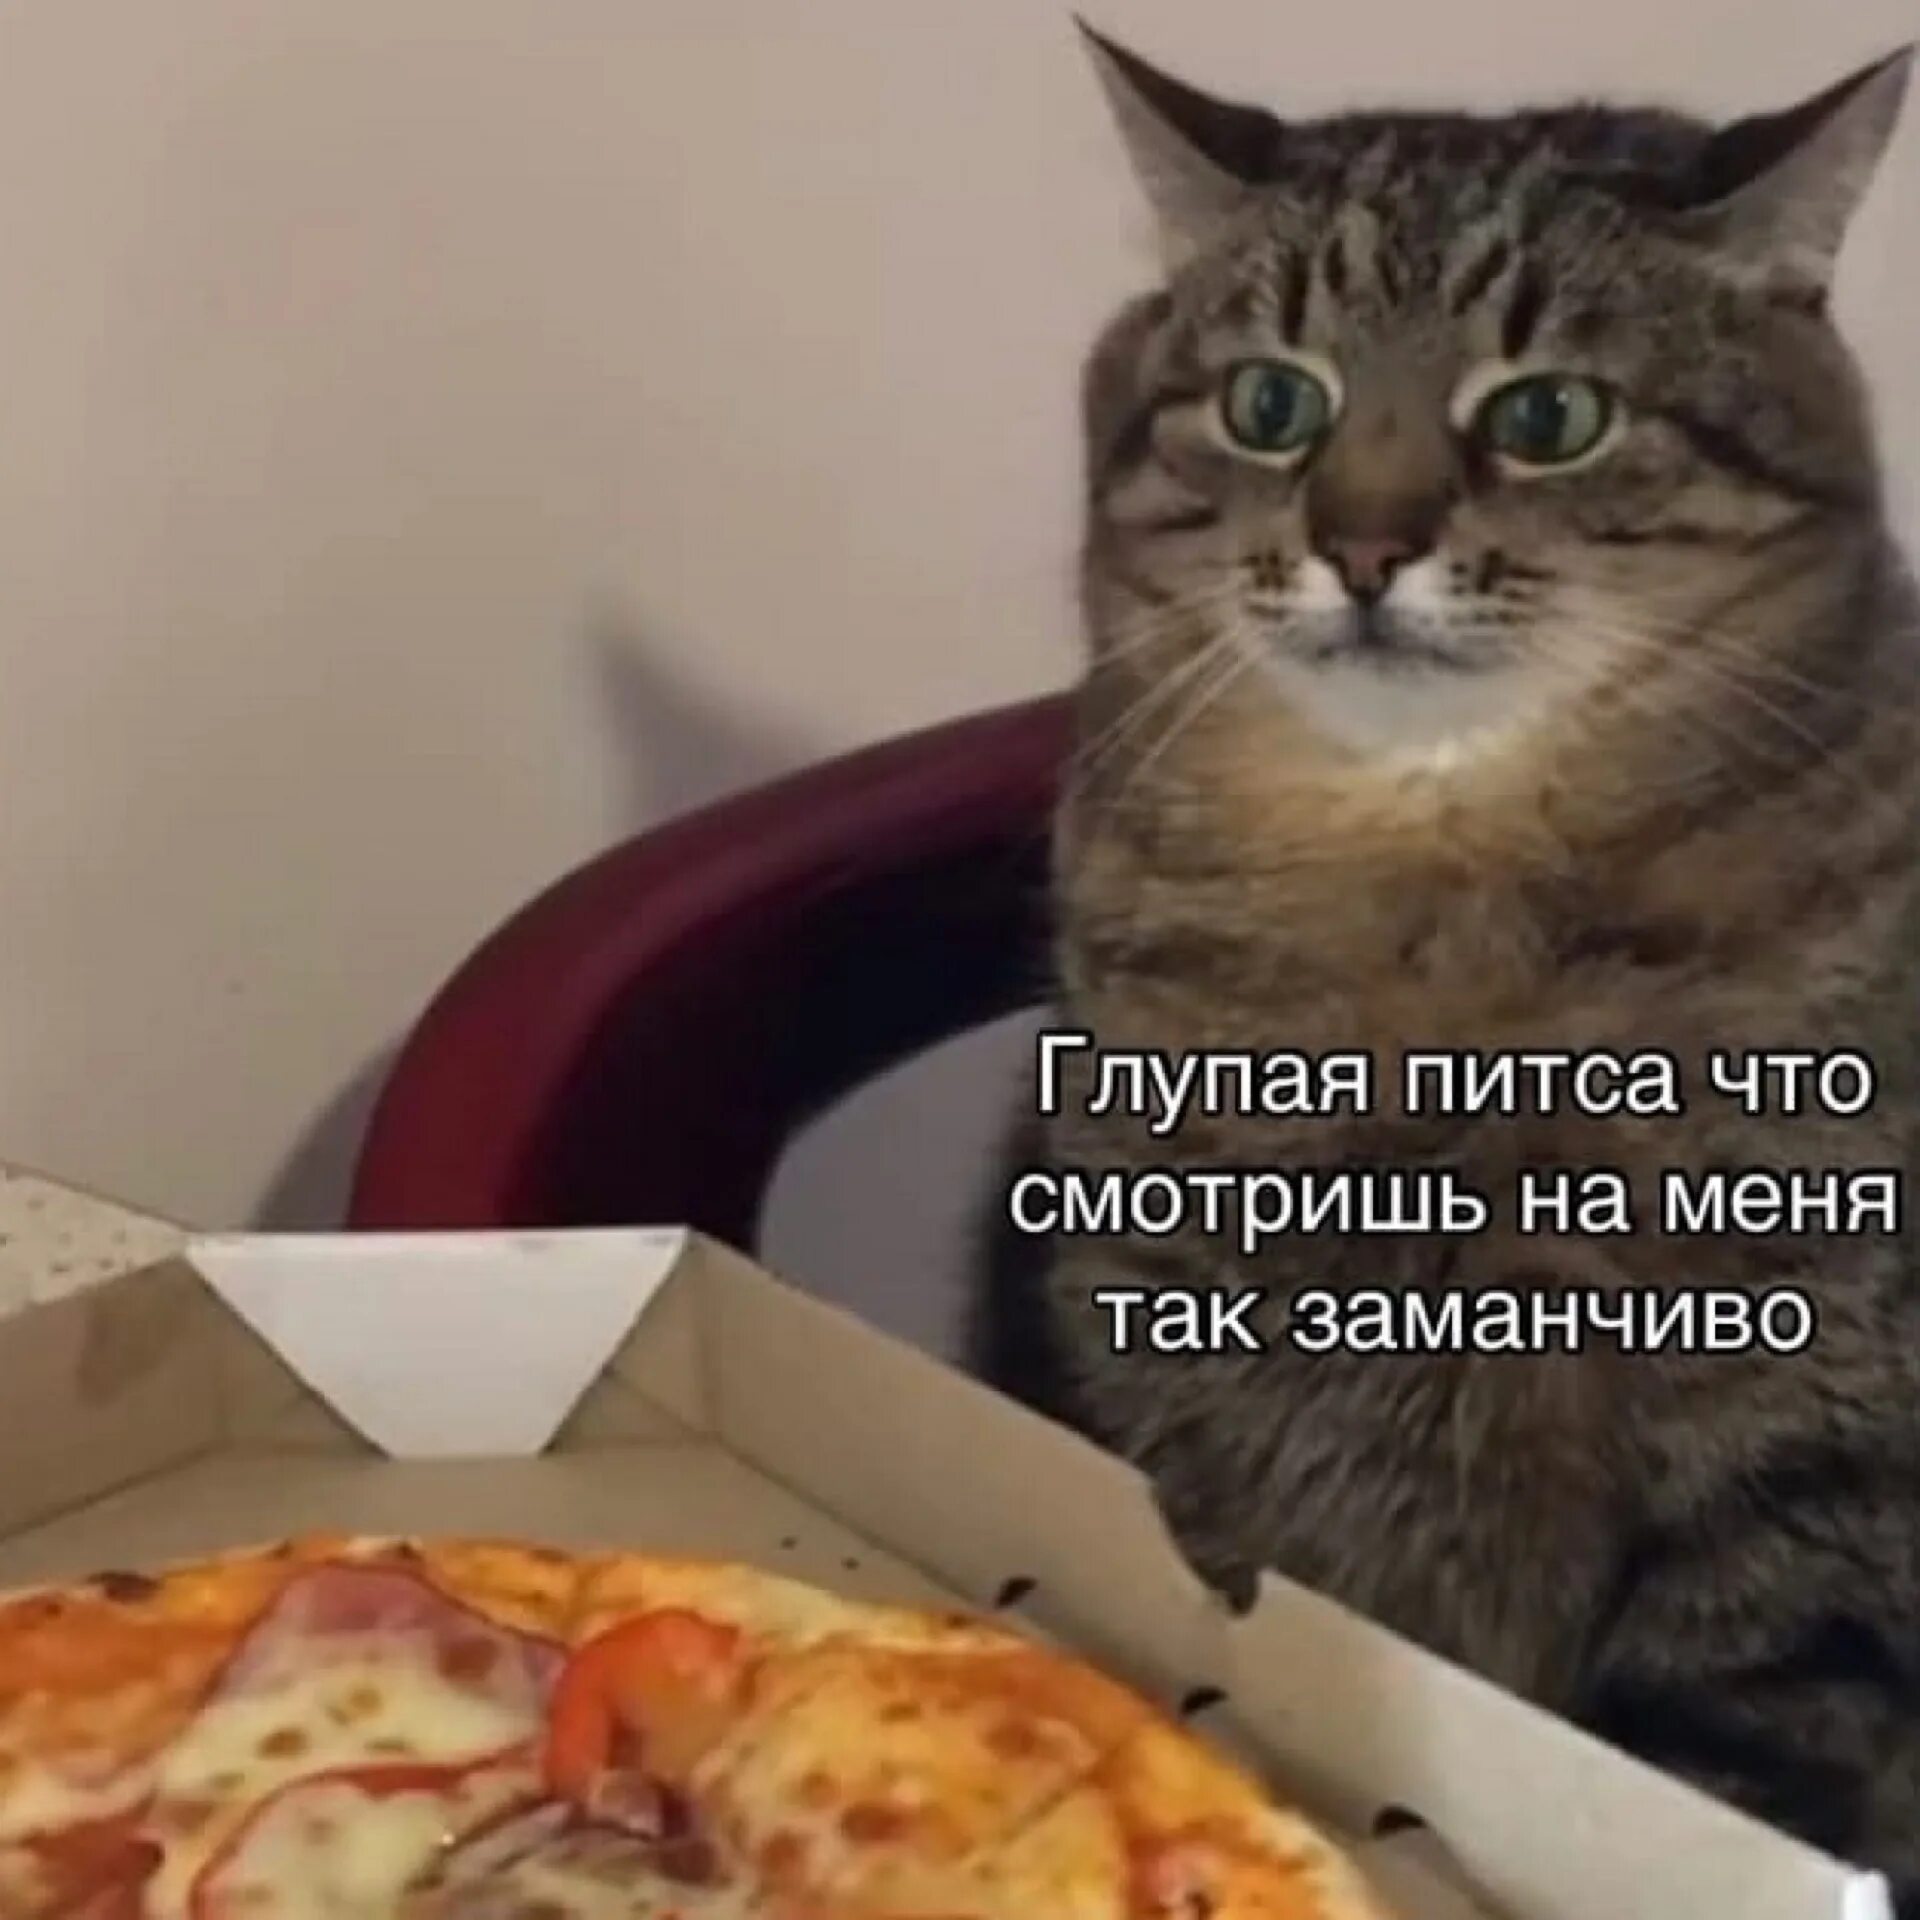 Котик с пиццей. Мемы с пиццей и котом. Мемы про котиков и еду. Привет глупая